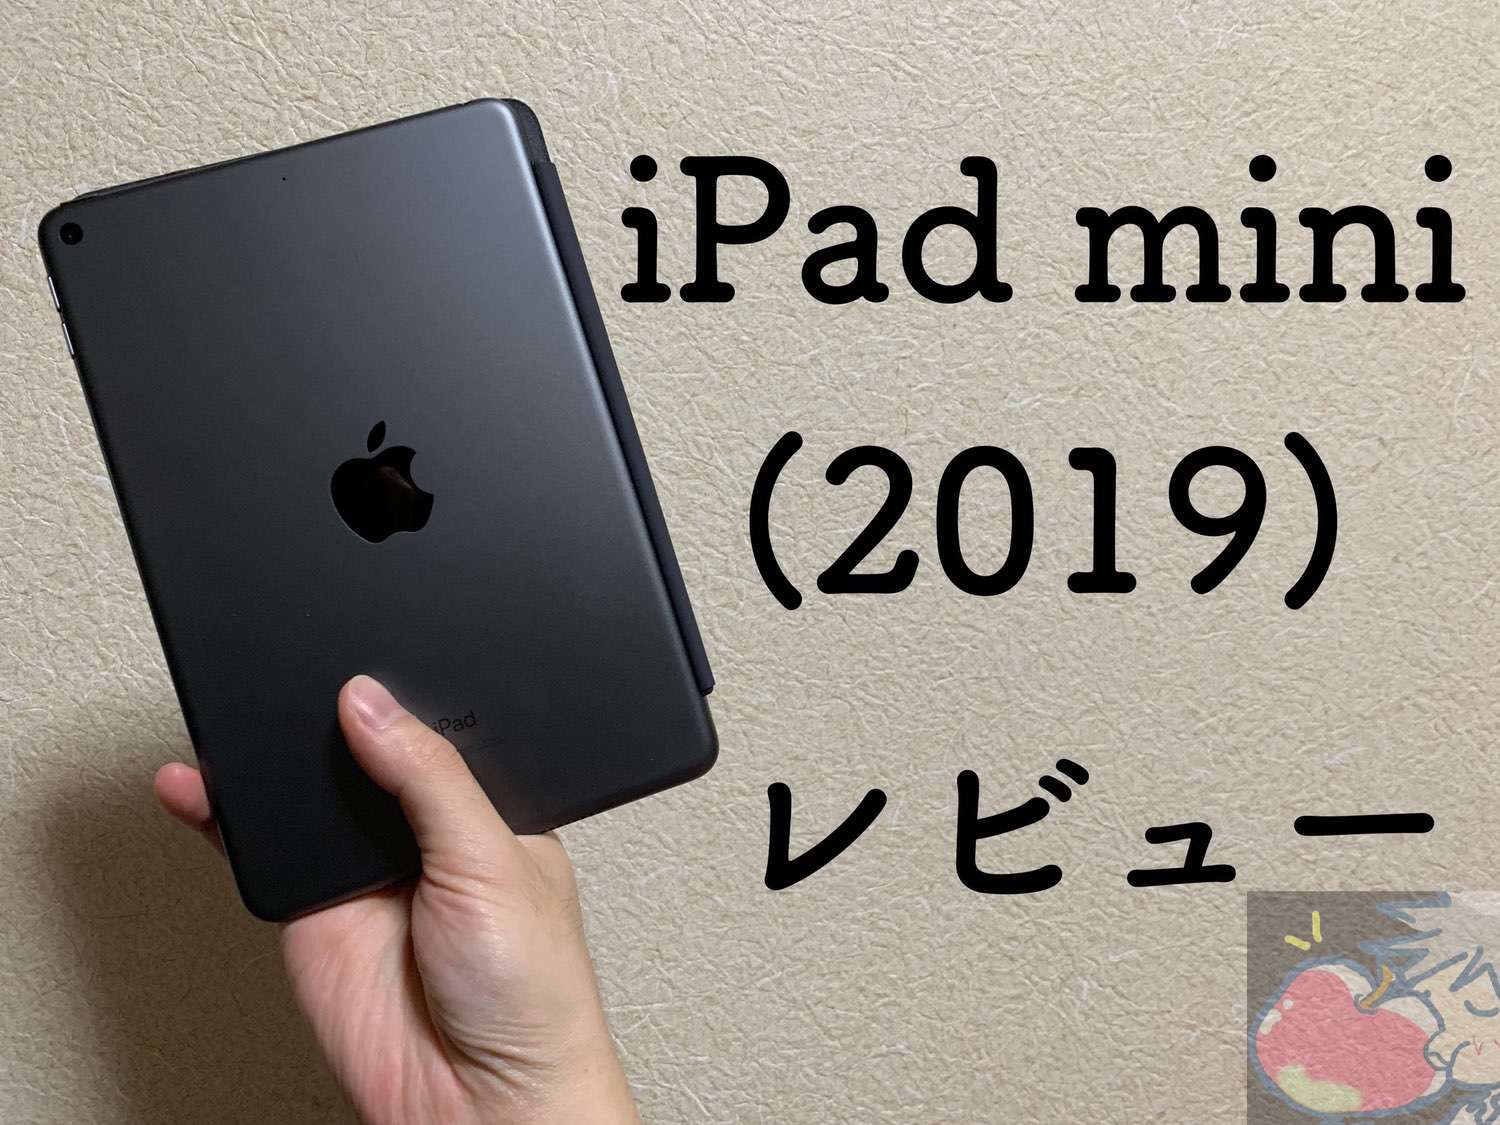 【写真59枚】狂気に満ちたApple信者の新型iPad mini(2019)レビュー